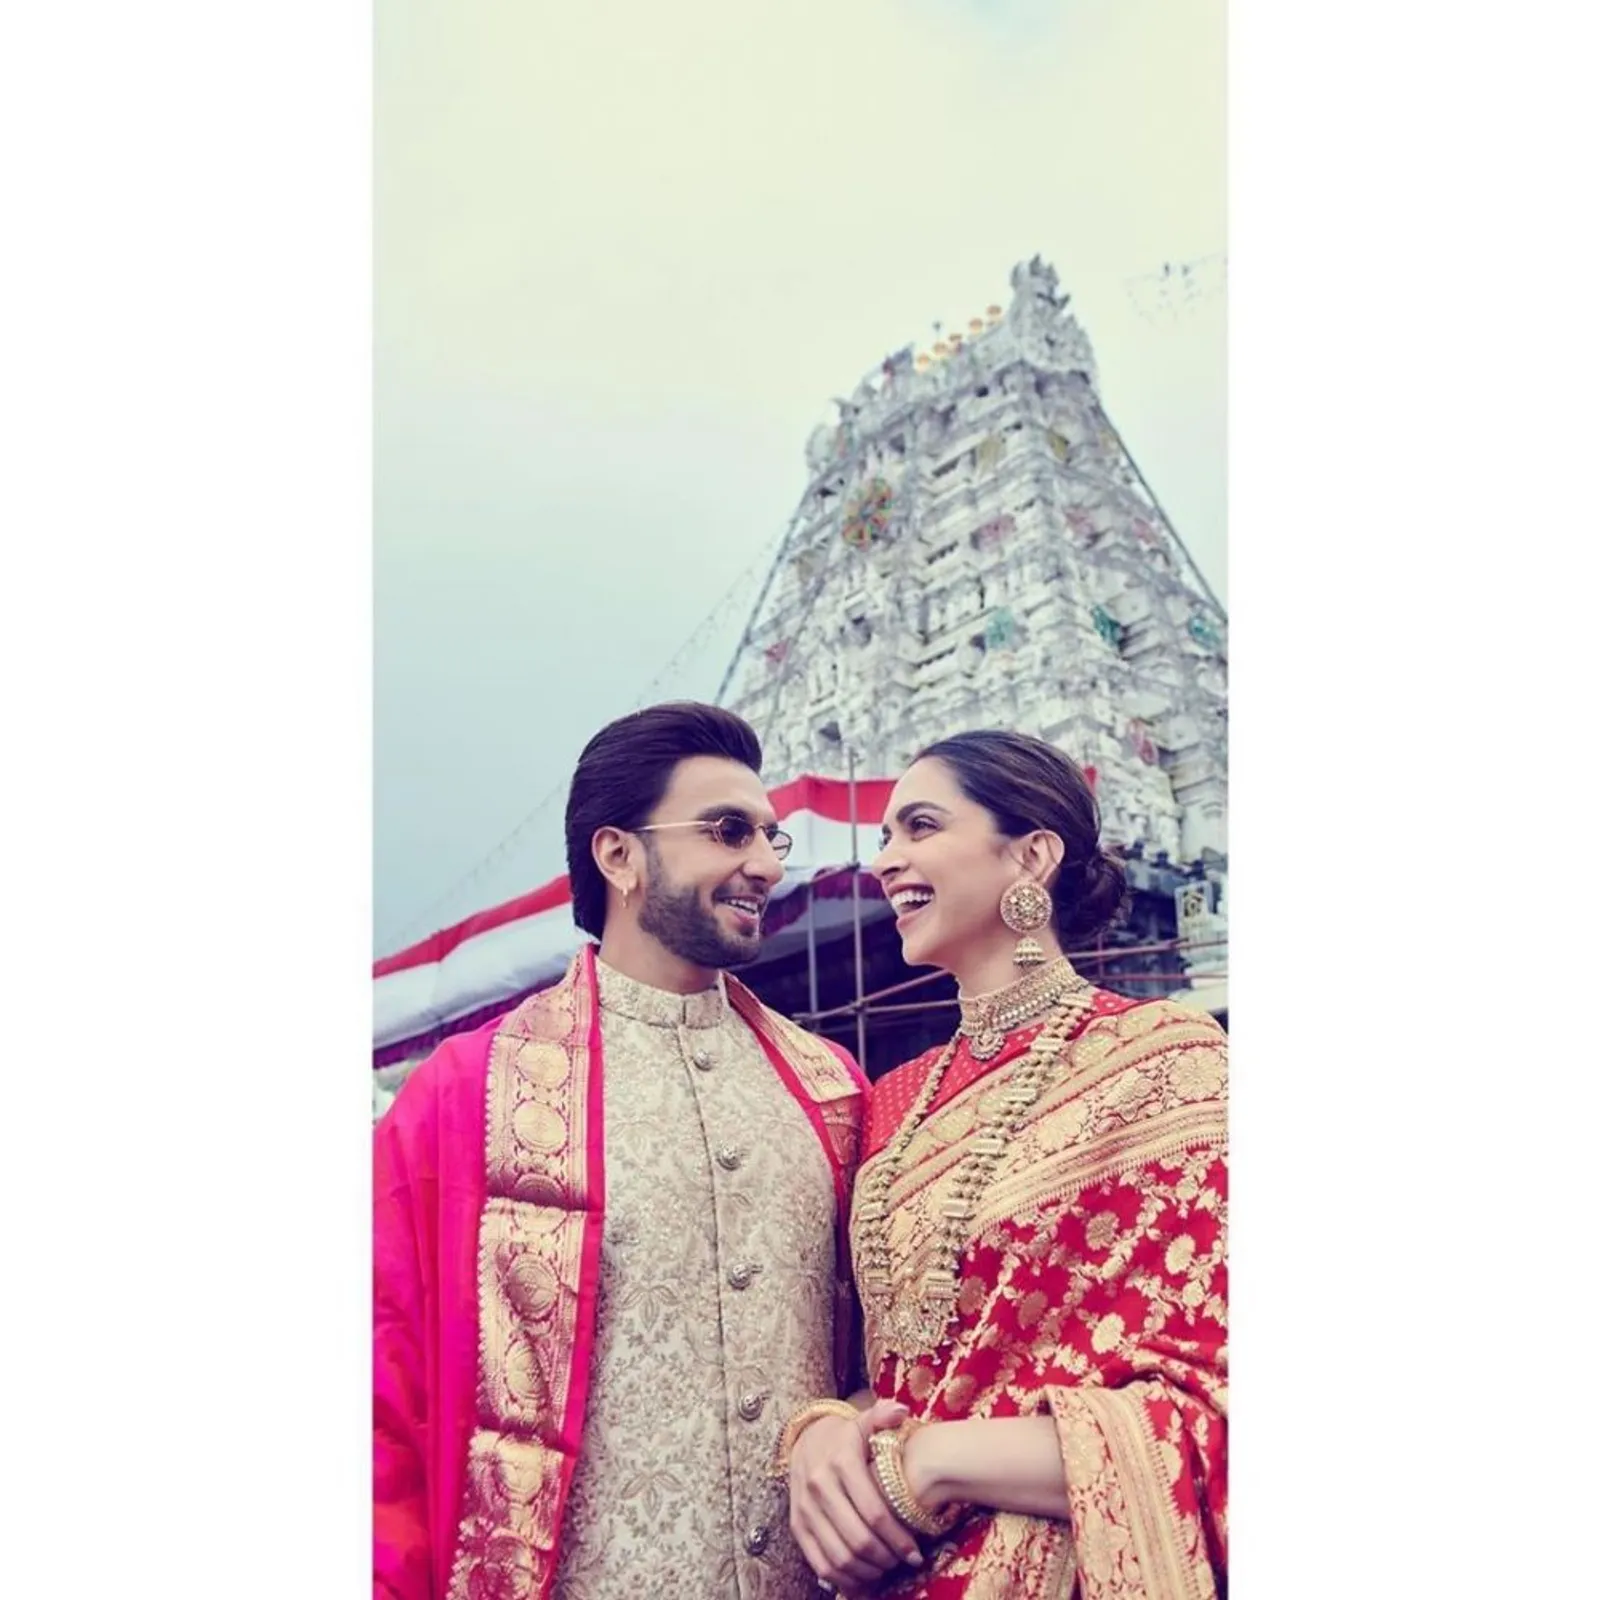 10 Potret Harmonisnya Pernikahan Deepika Padukone dan Ranveer Singh